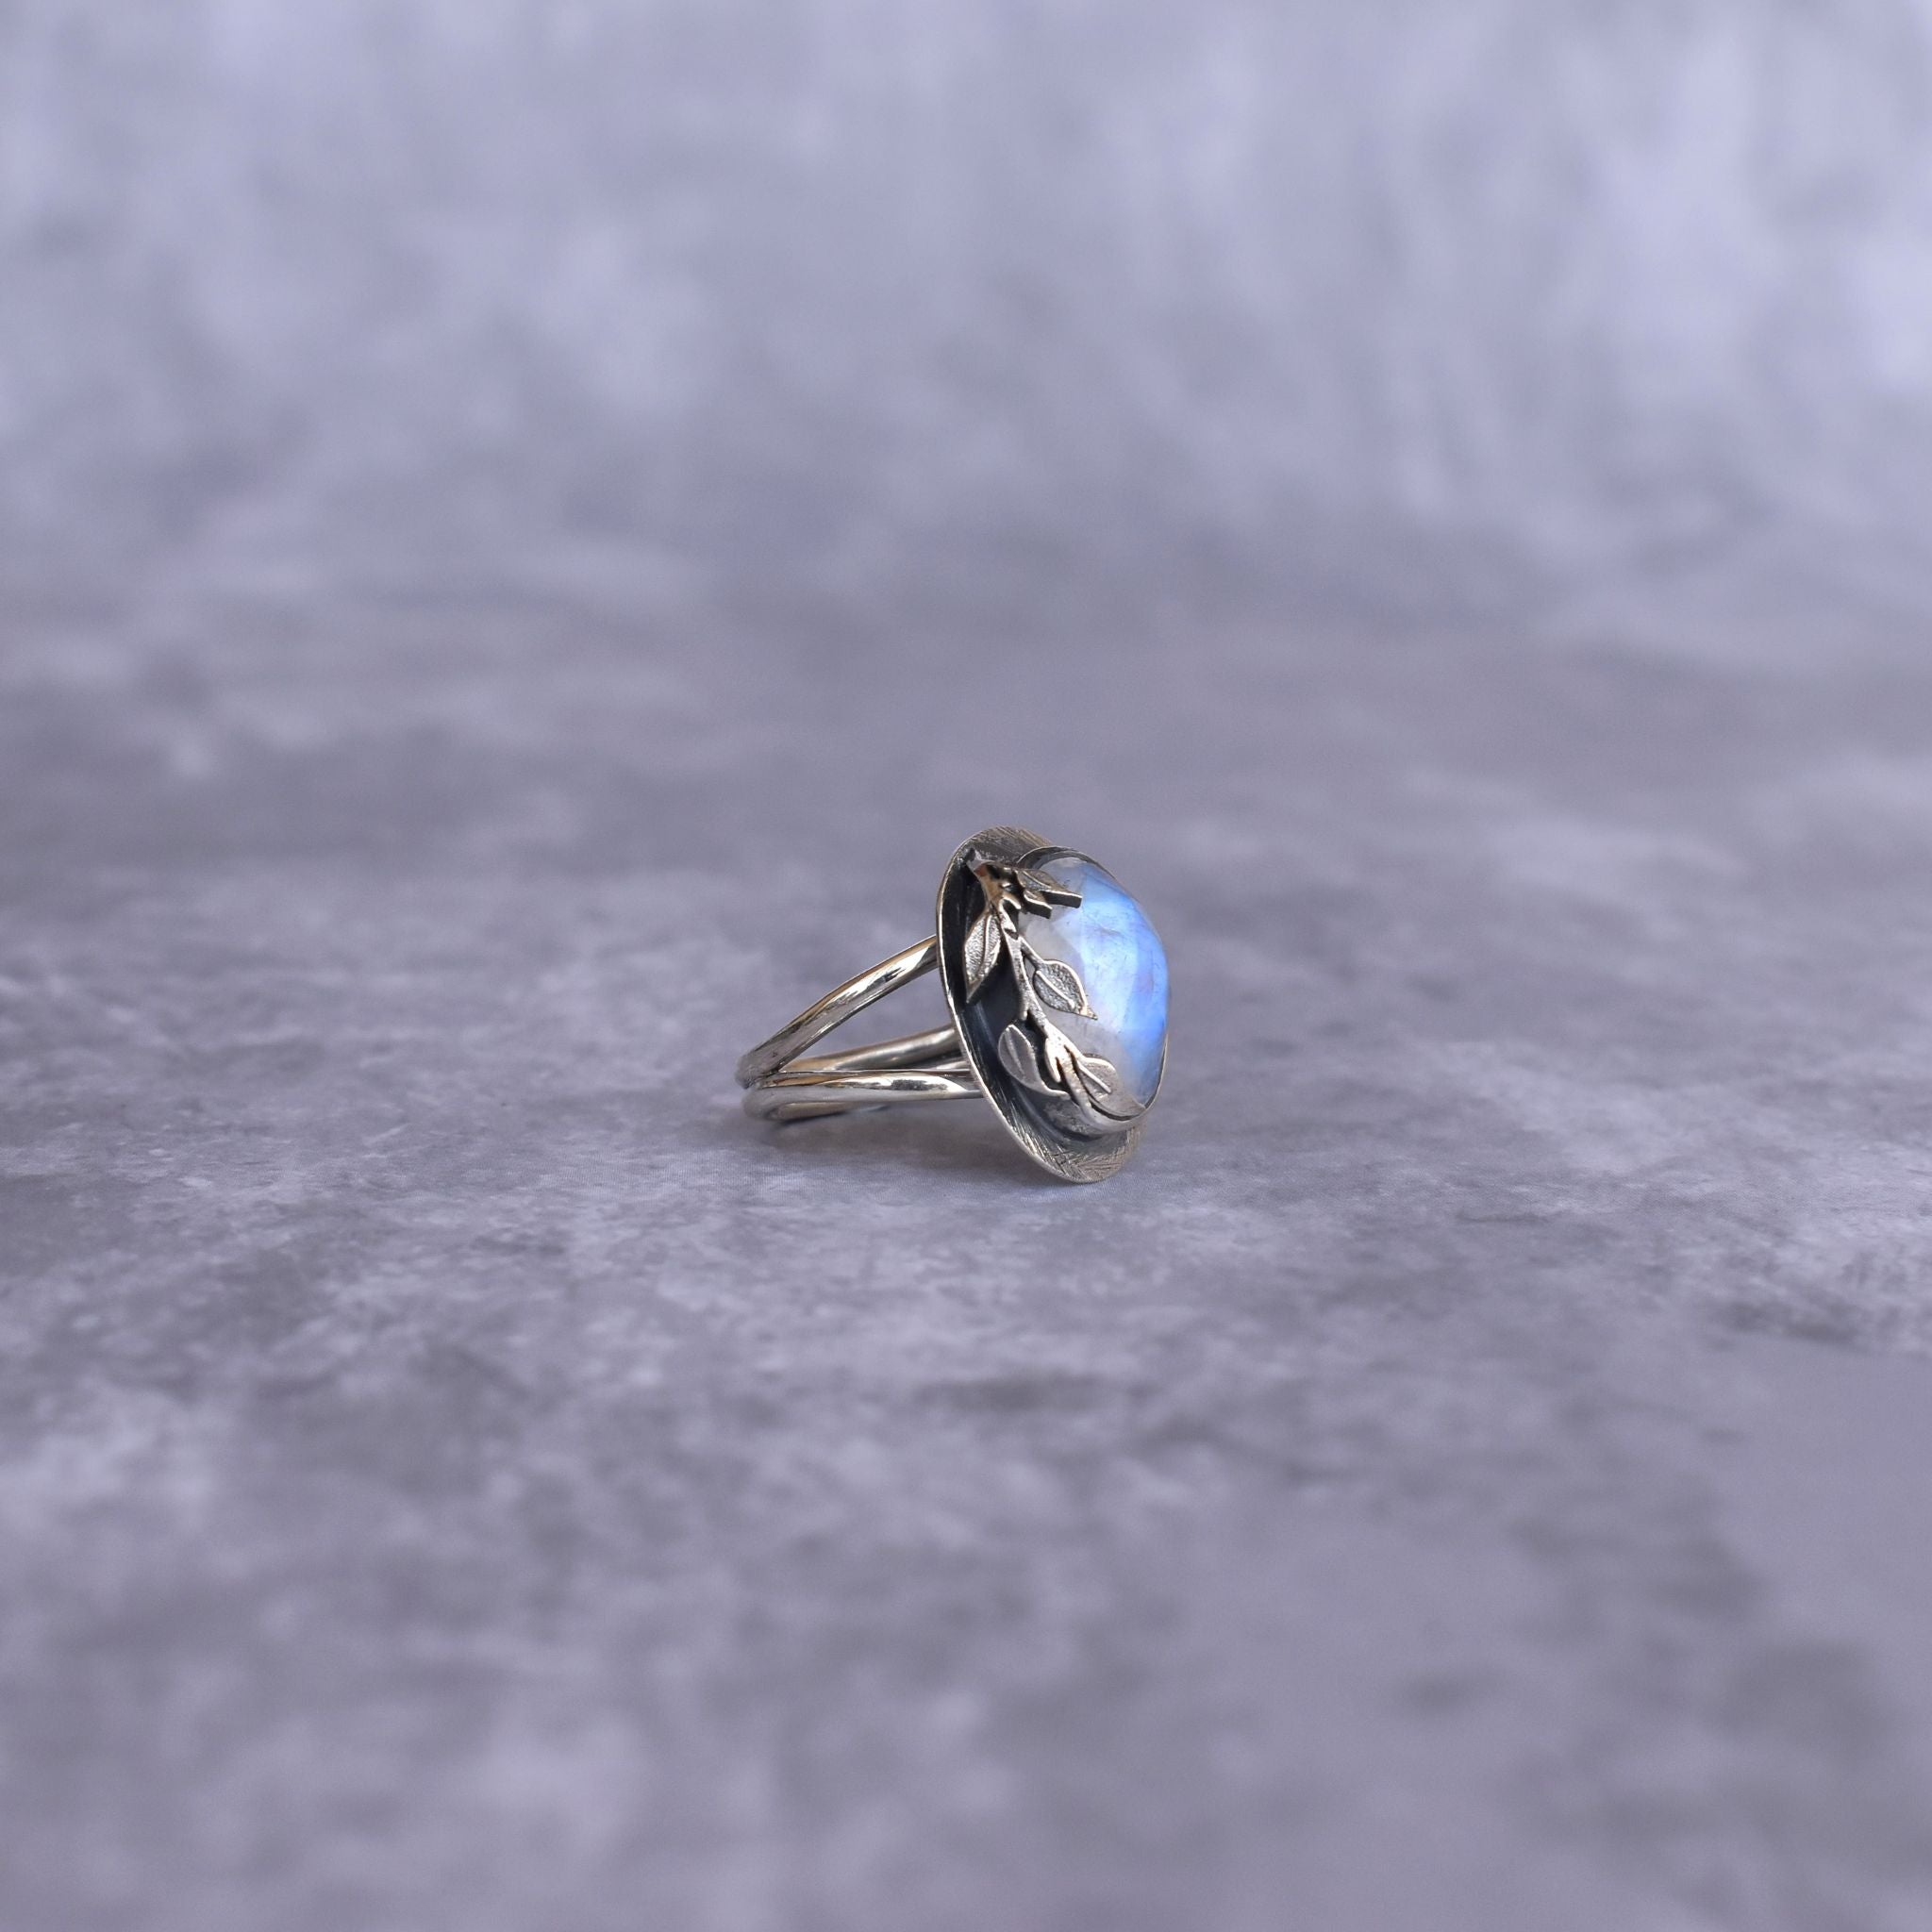 Celestial Leaf - Moonstone Ring